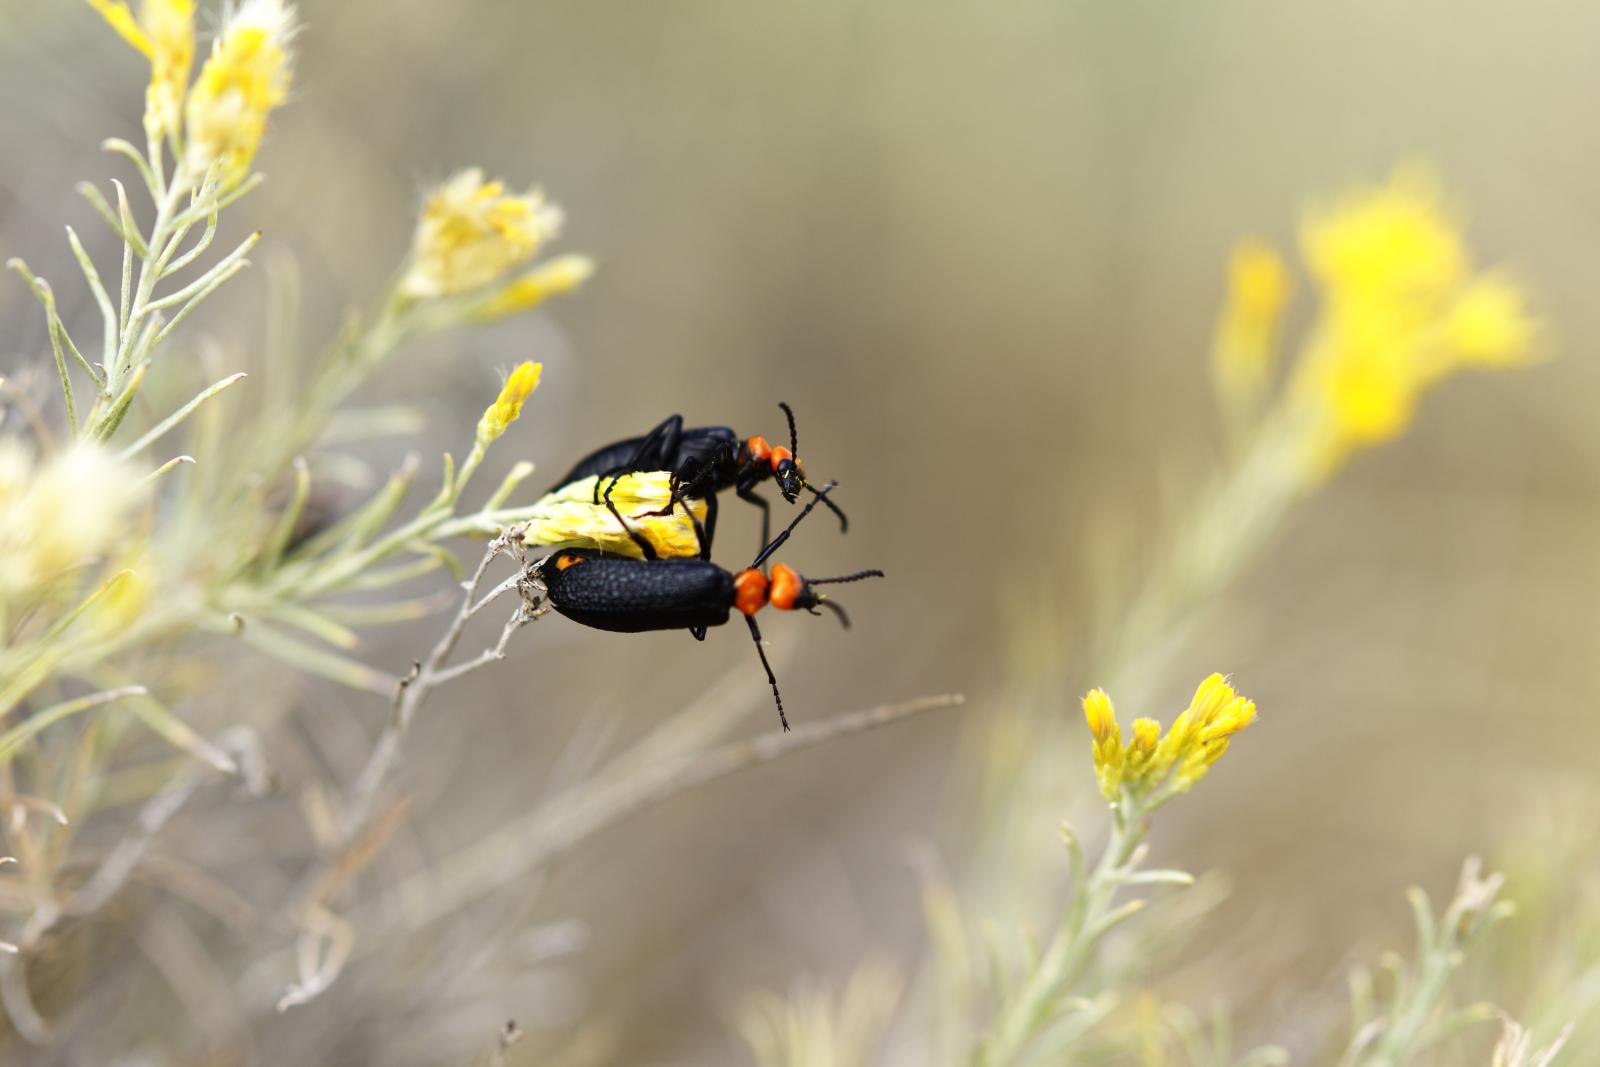 Soldier Beetles | Buy this image